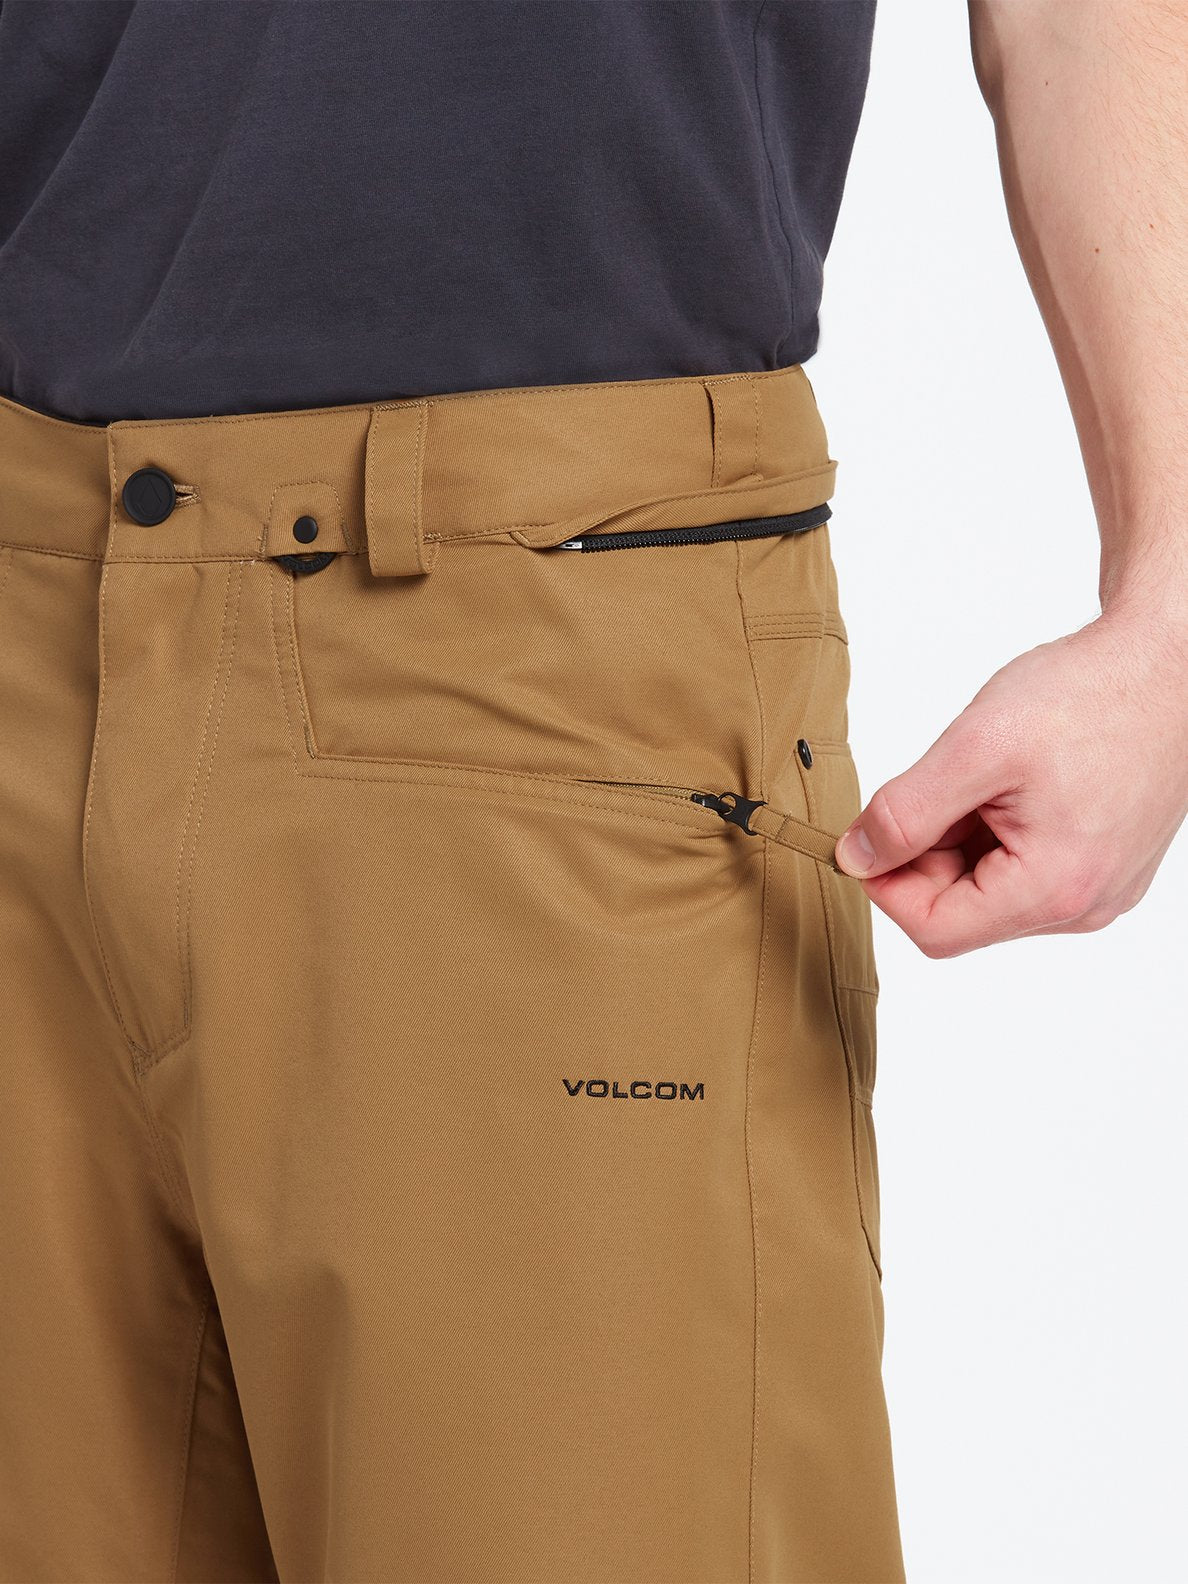 Volcom Carbon Men's Snow Pants